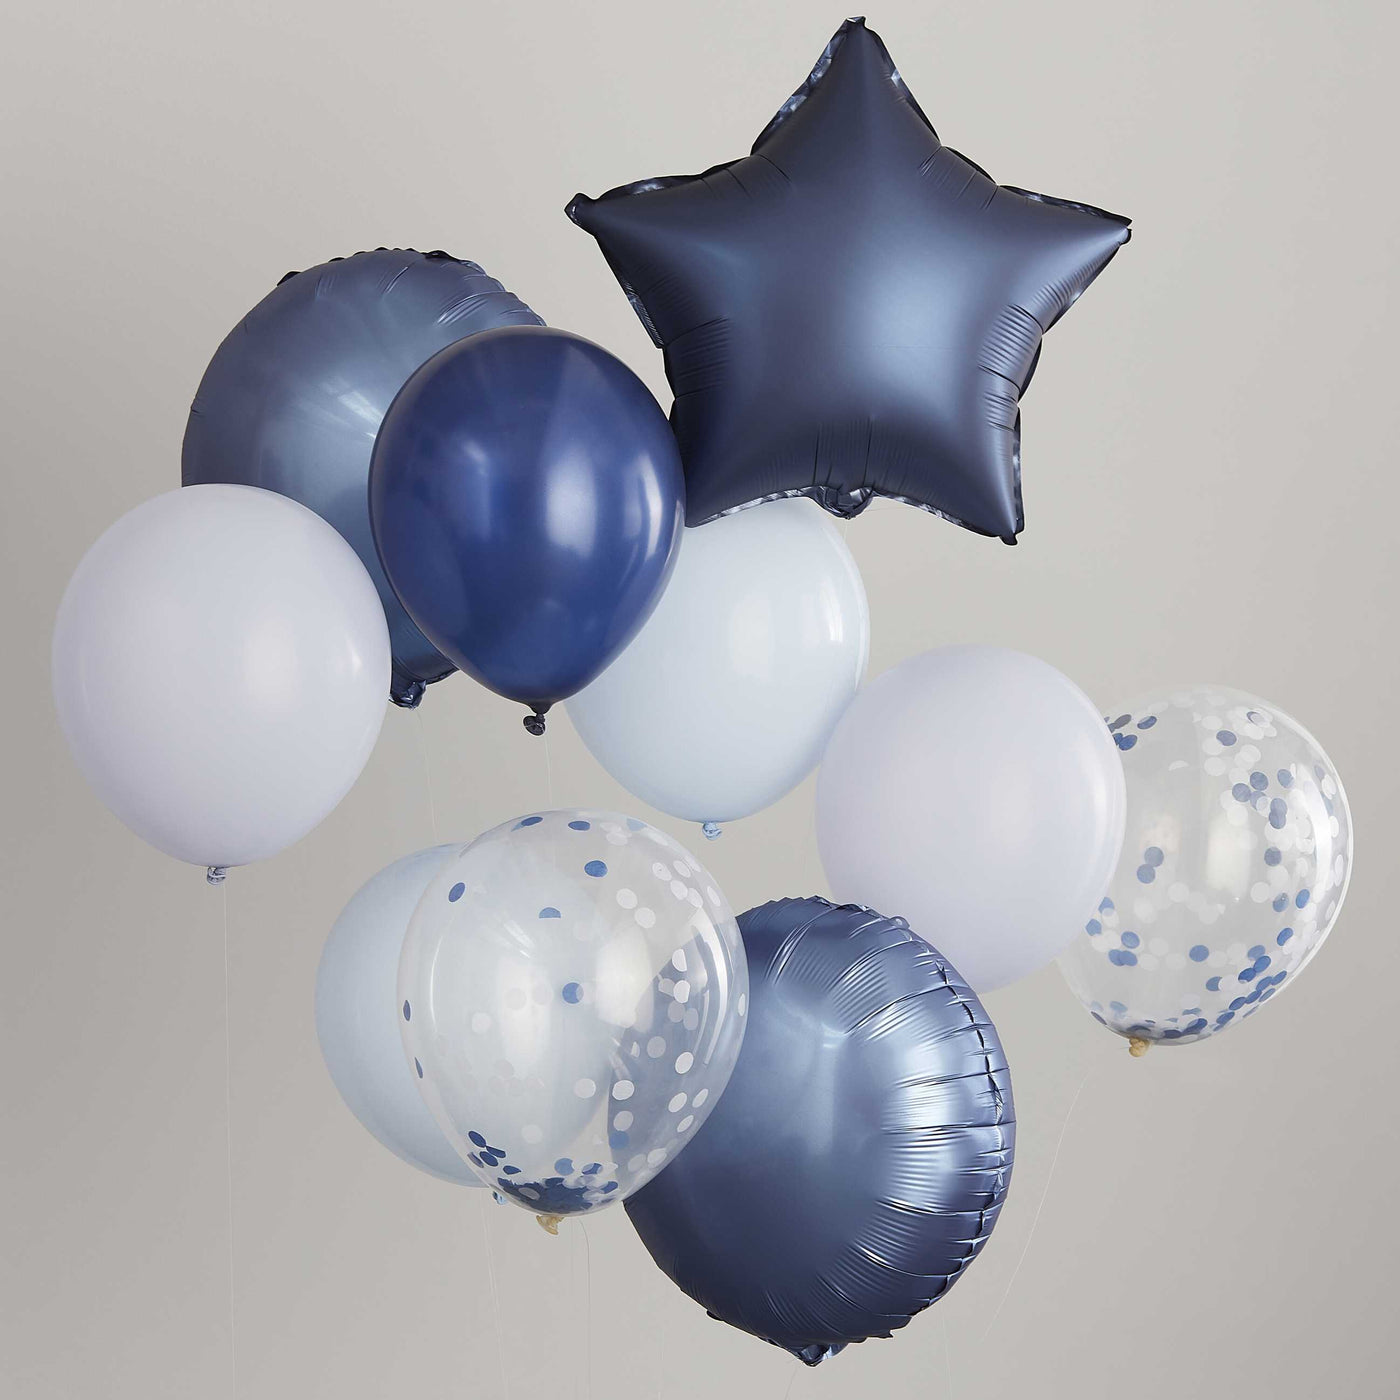 Balões de confetes de látex de folha-marinha Balões de confetes de látex de folha-marinha